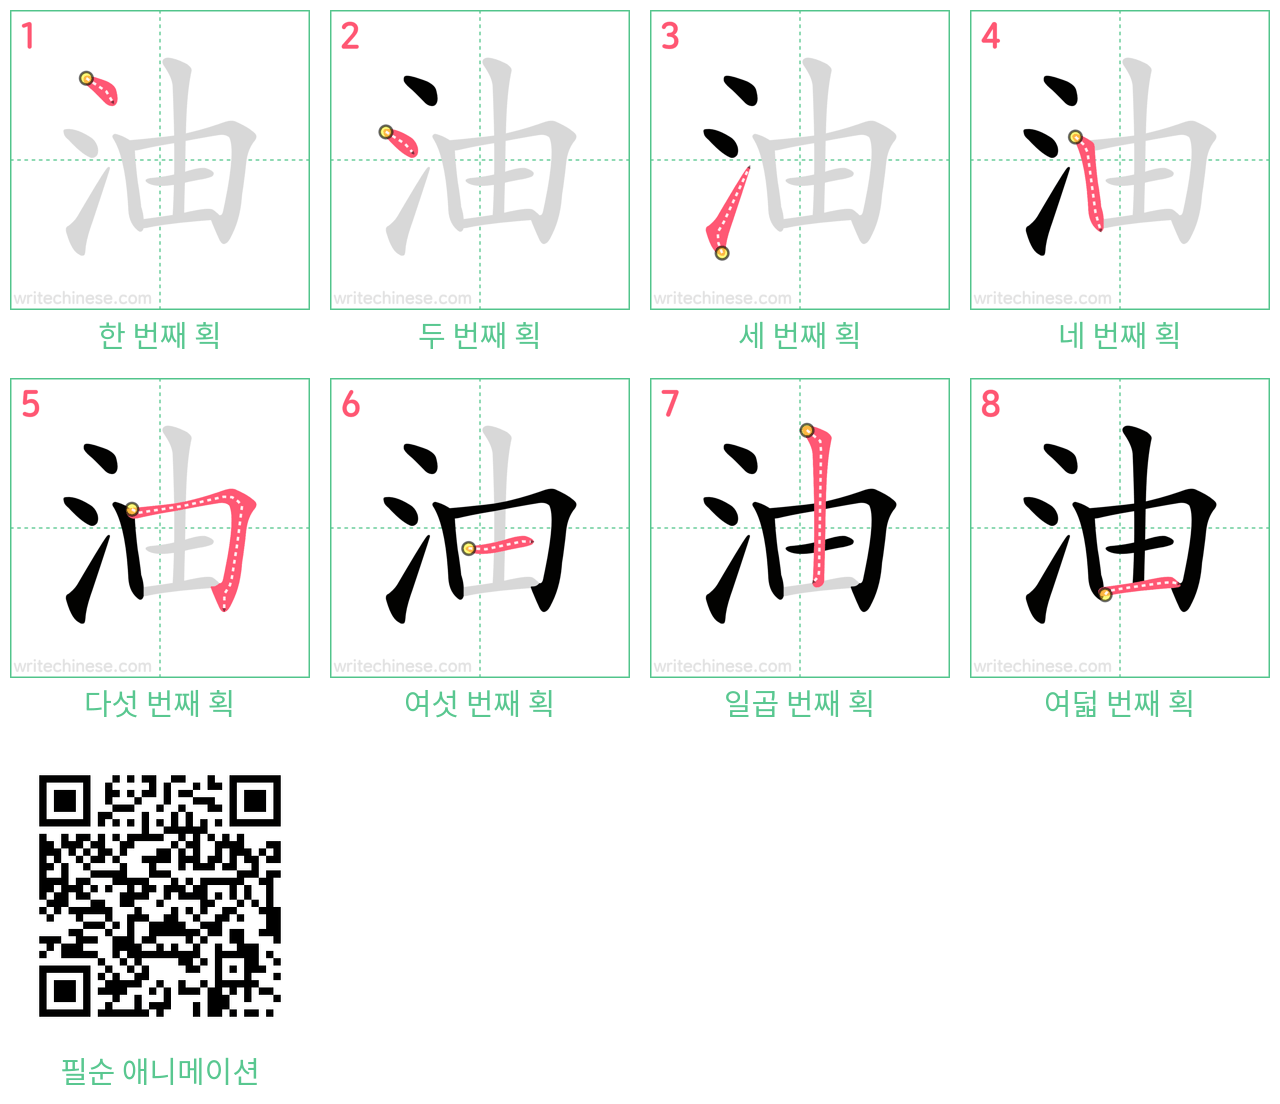 油 step-by-step stroke order diagrams